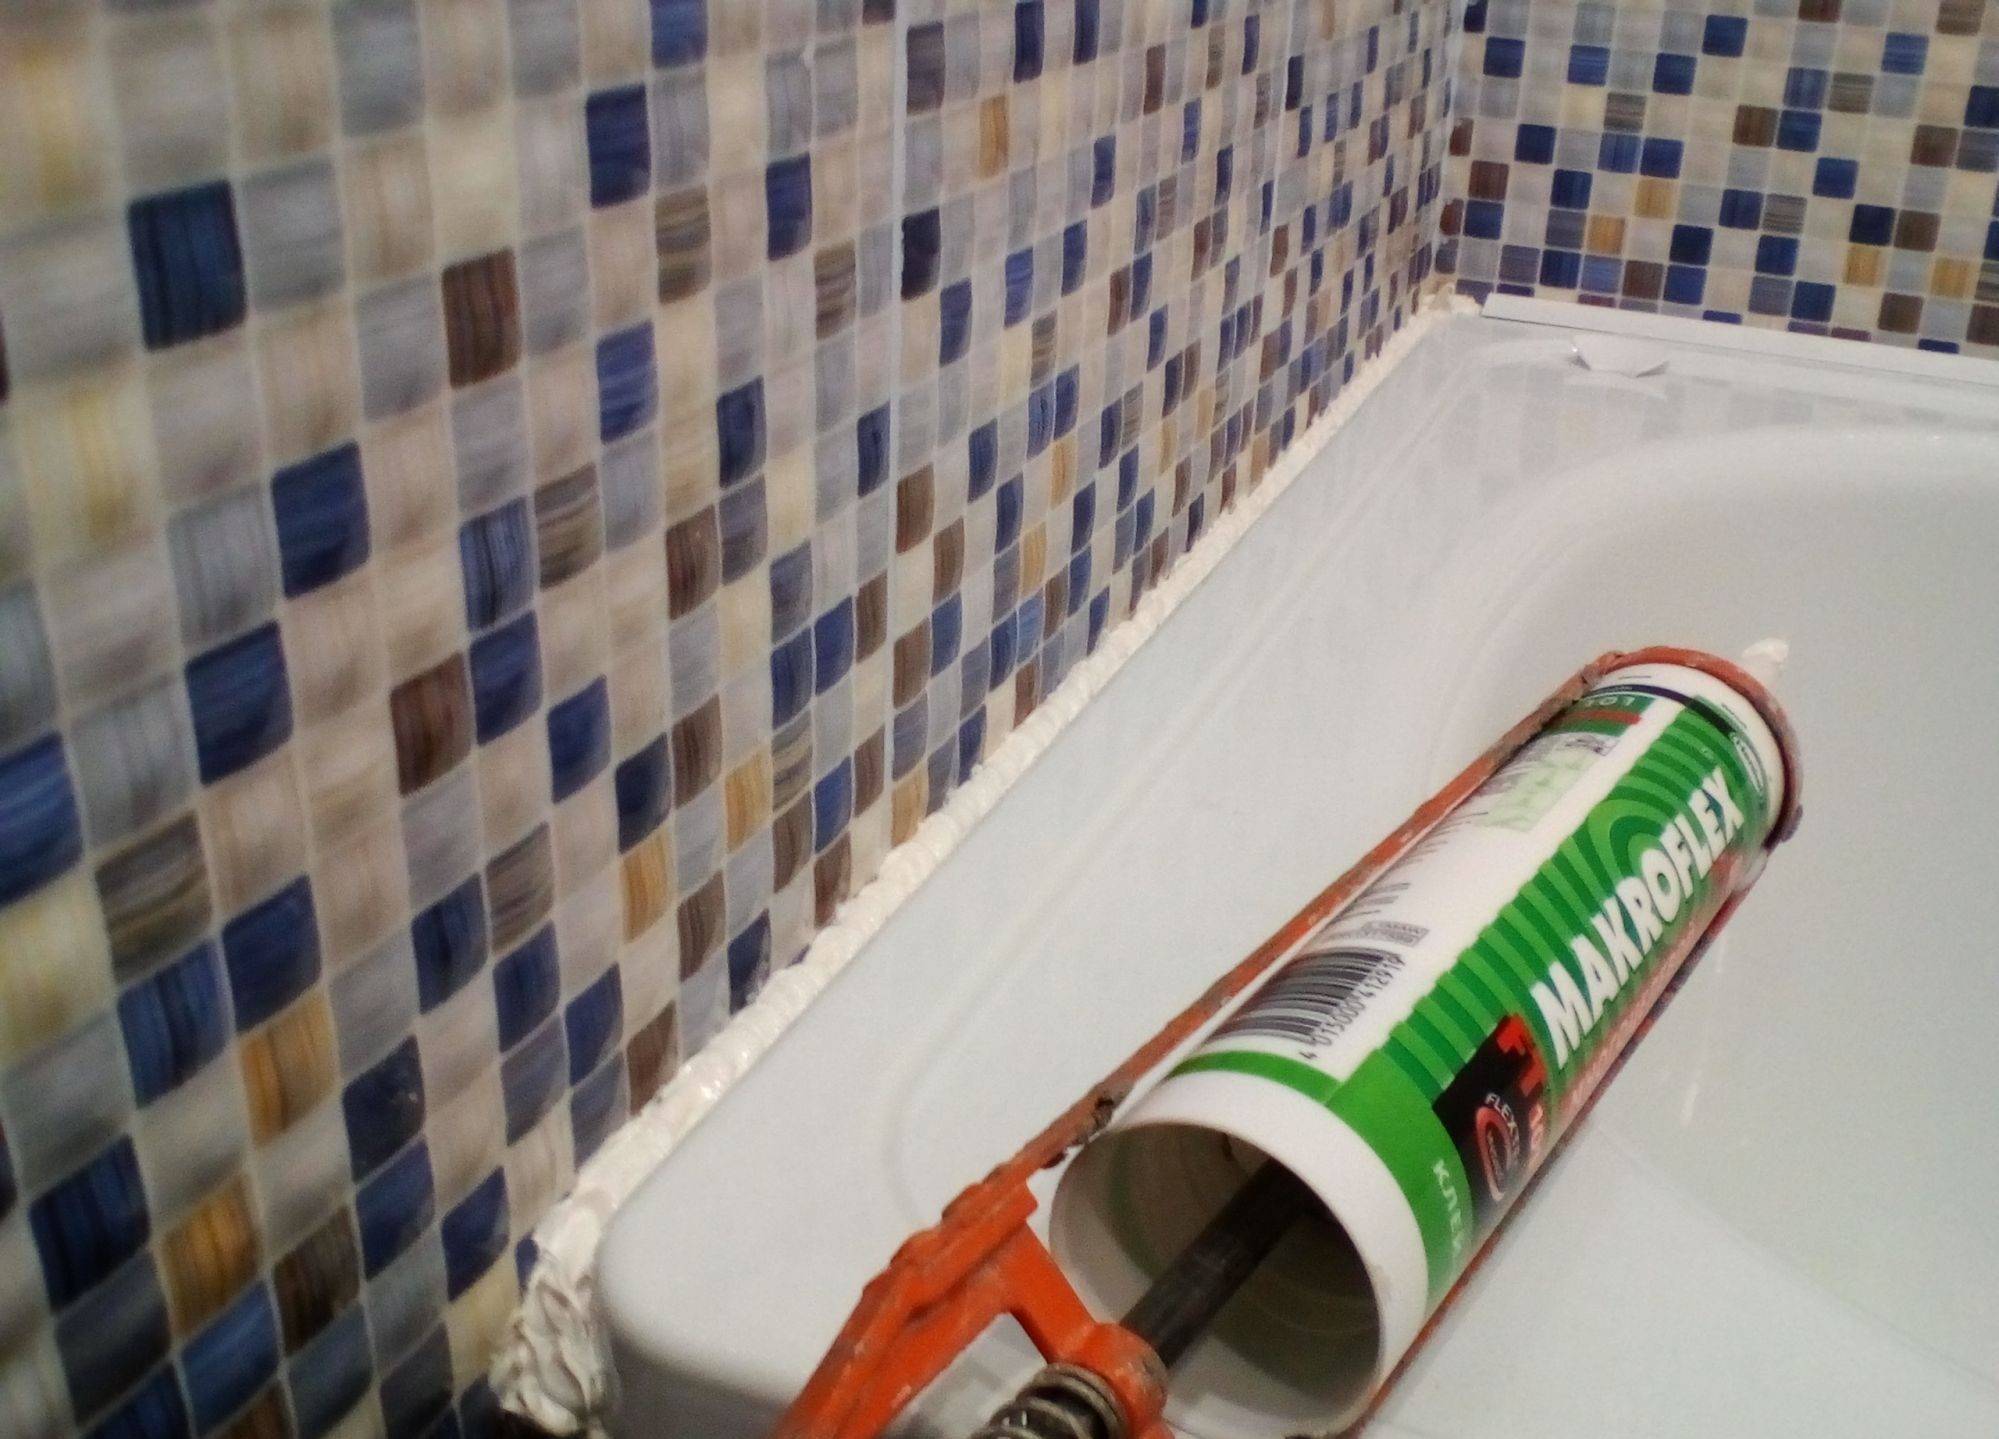 10 способов надежной герметизации стыка между ванной и стеной